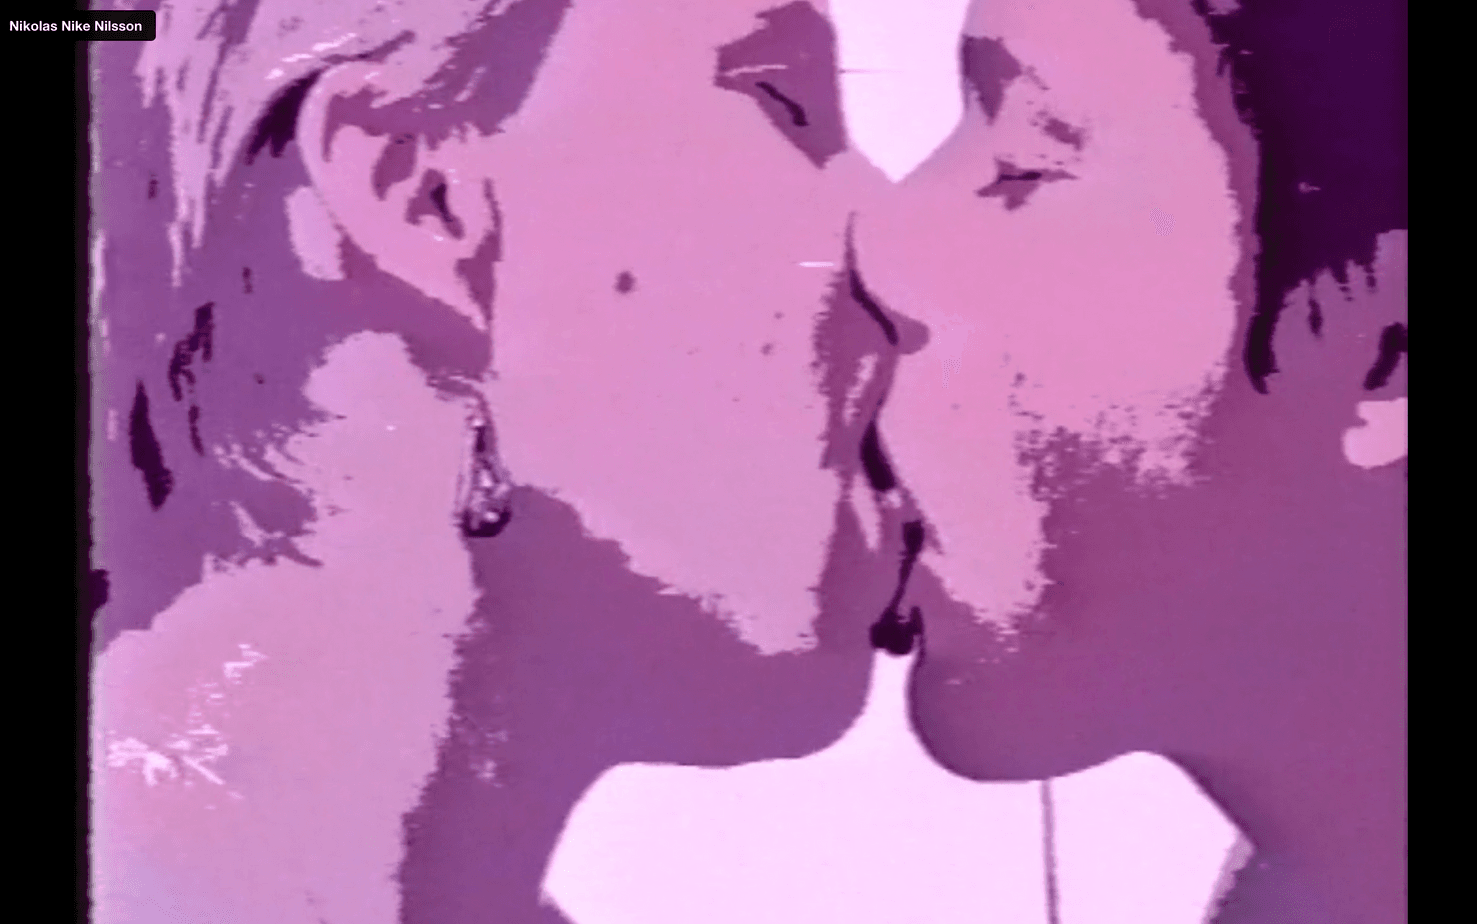 Filmen ”Kiss” av Nikolas Nike Nilsson var en del av installationen "Welcome to Homoland" som visades på Konsthögskolan i Umeå 1996. Kyssen är inspelad i en enda tagning på cirka 8 minuter. 